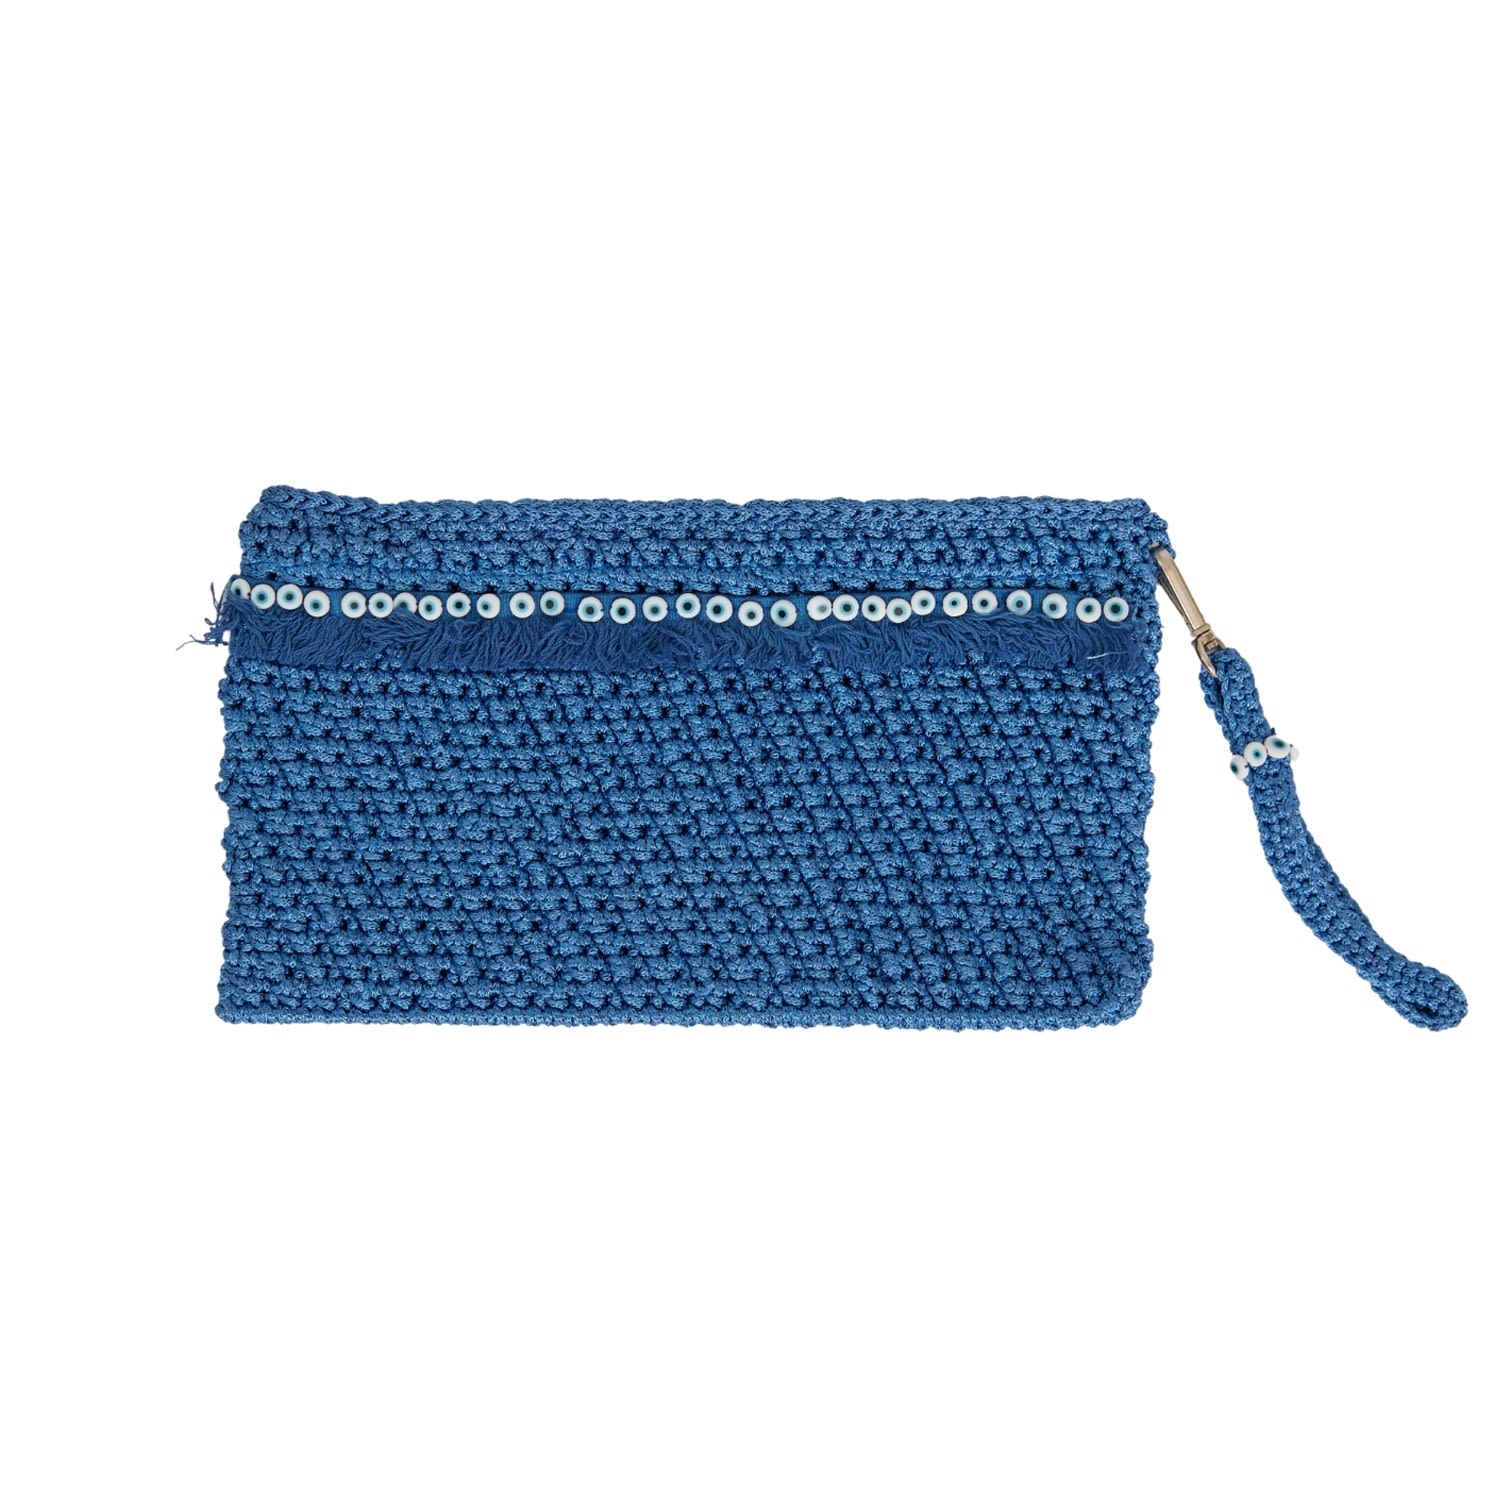 N'onat Women's Corfu Crochet Clutch In Blue